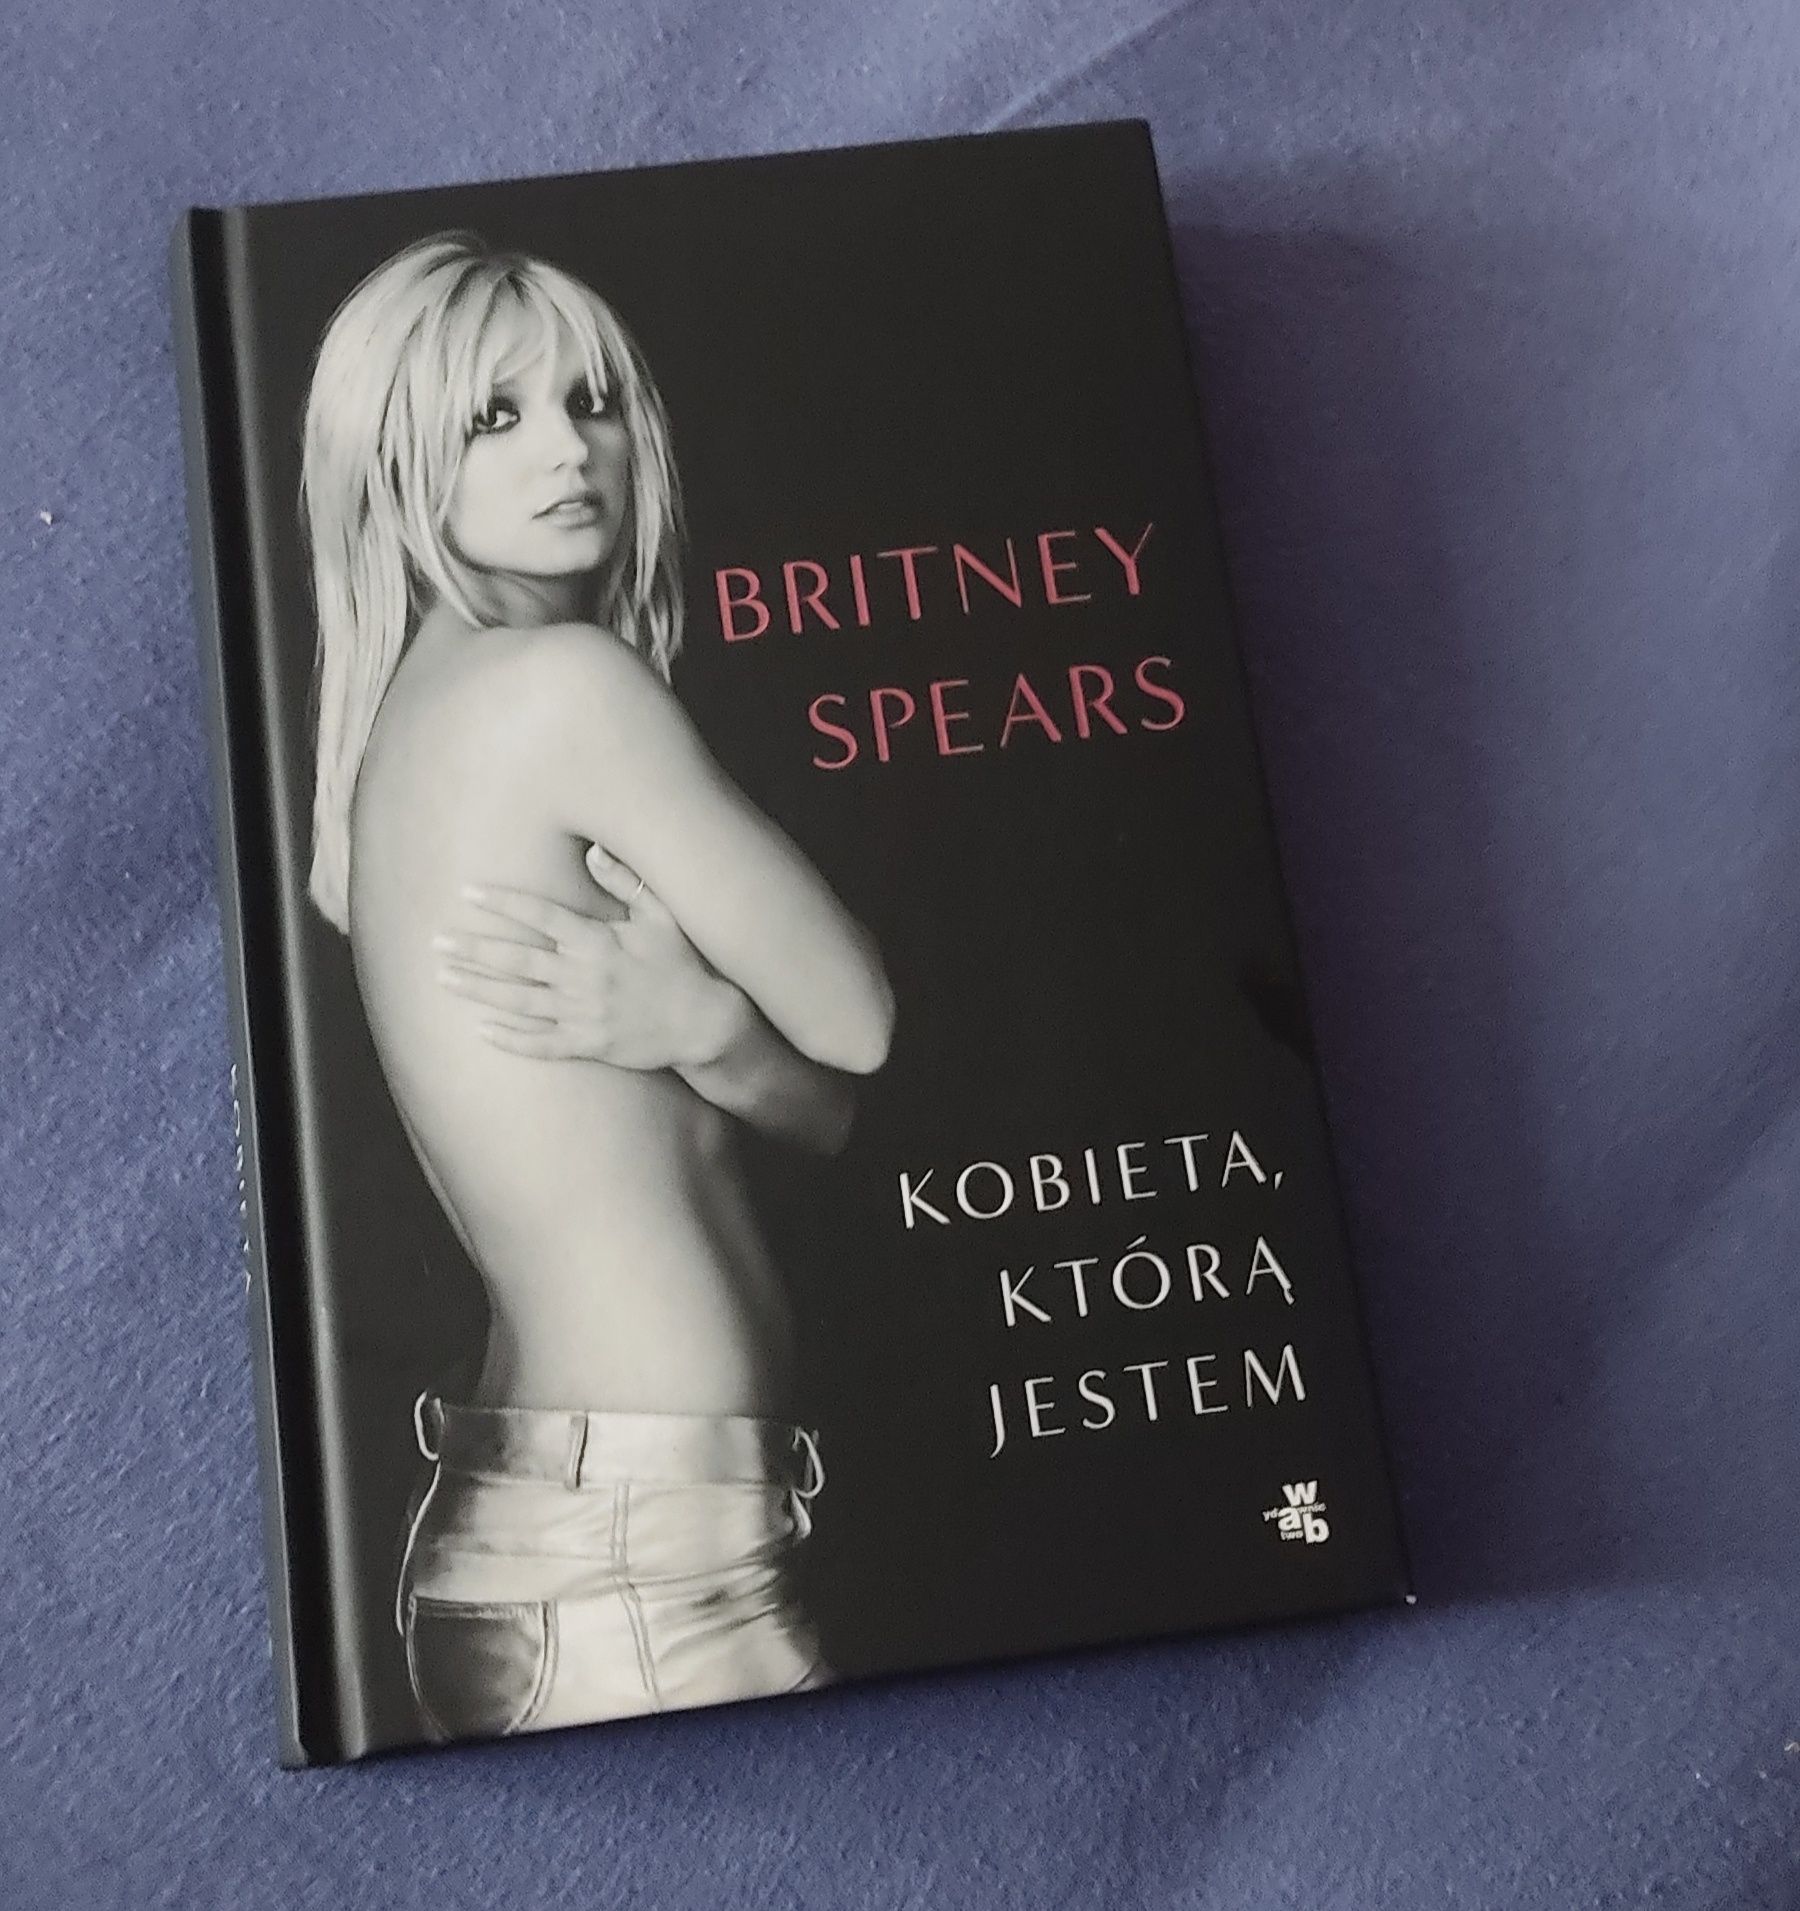 Britney Spears - Kobieta, którą jestem. Stan idealny.